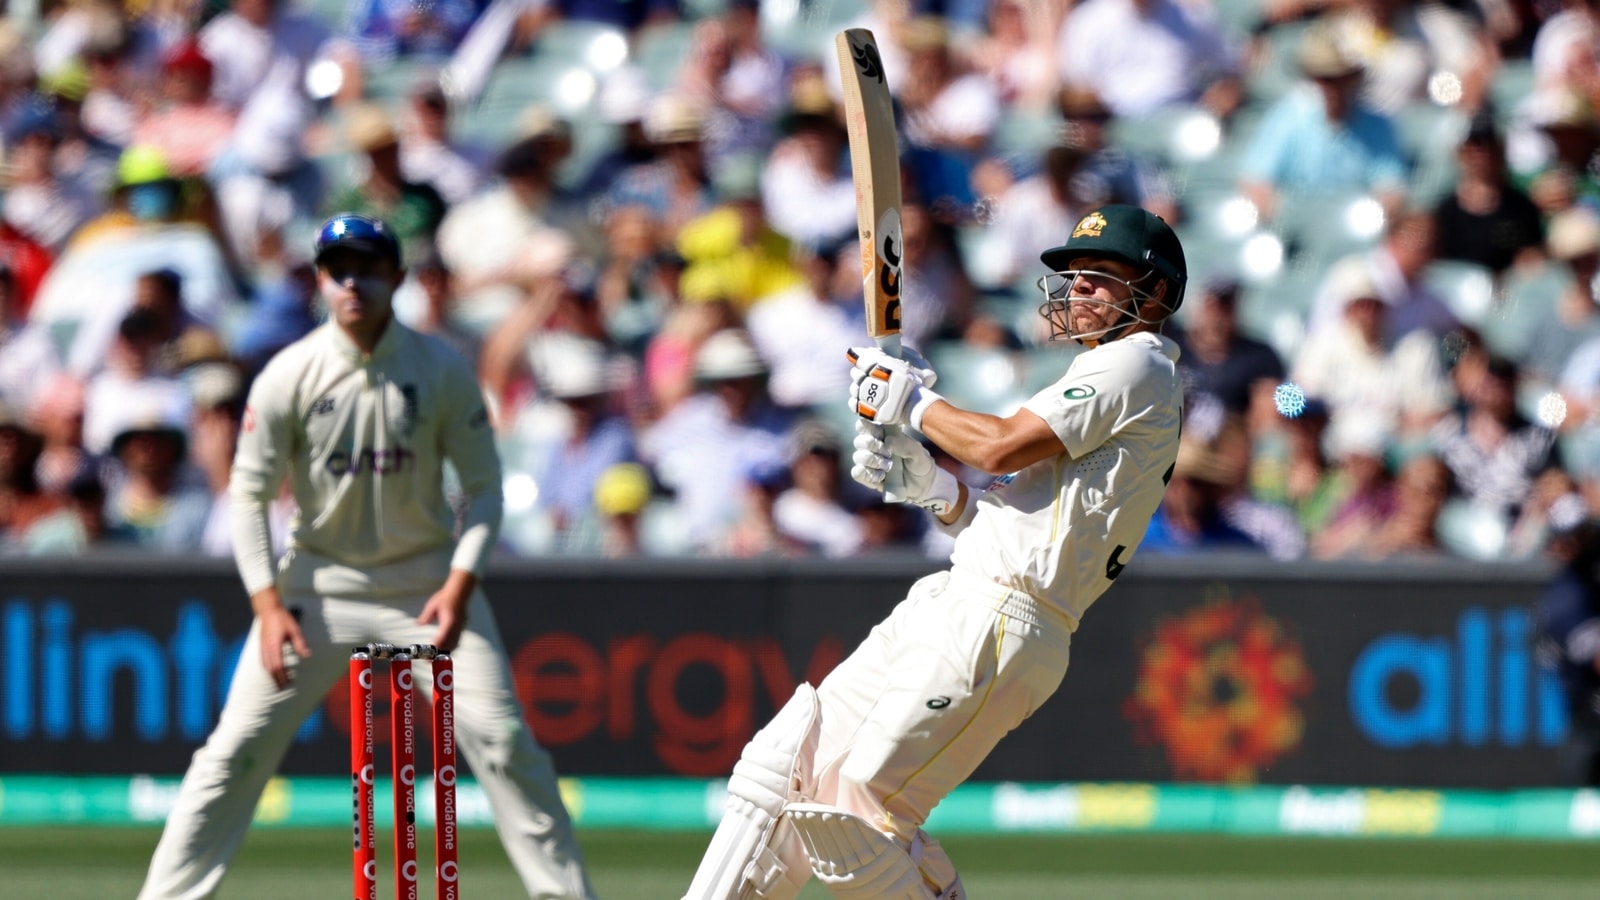 Australia vs England, 2nd Ashes Test Day 1 Live Cricket Score AUS vs